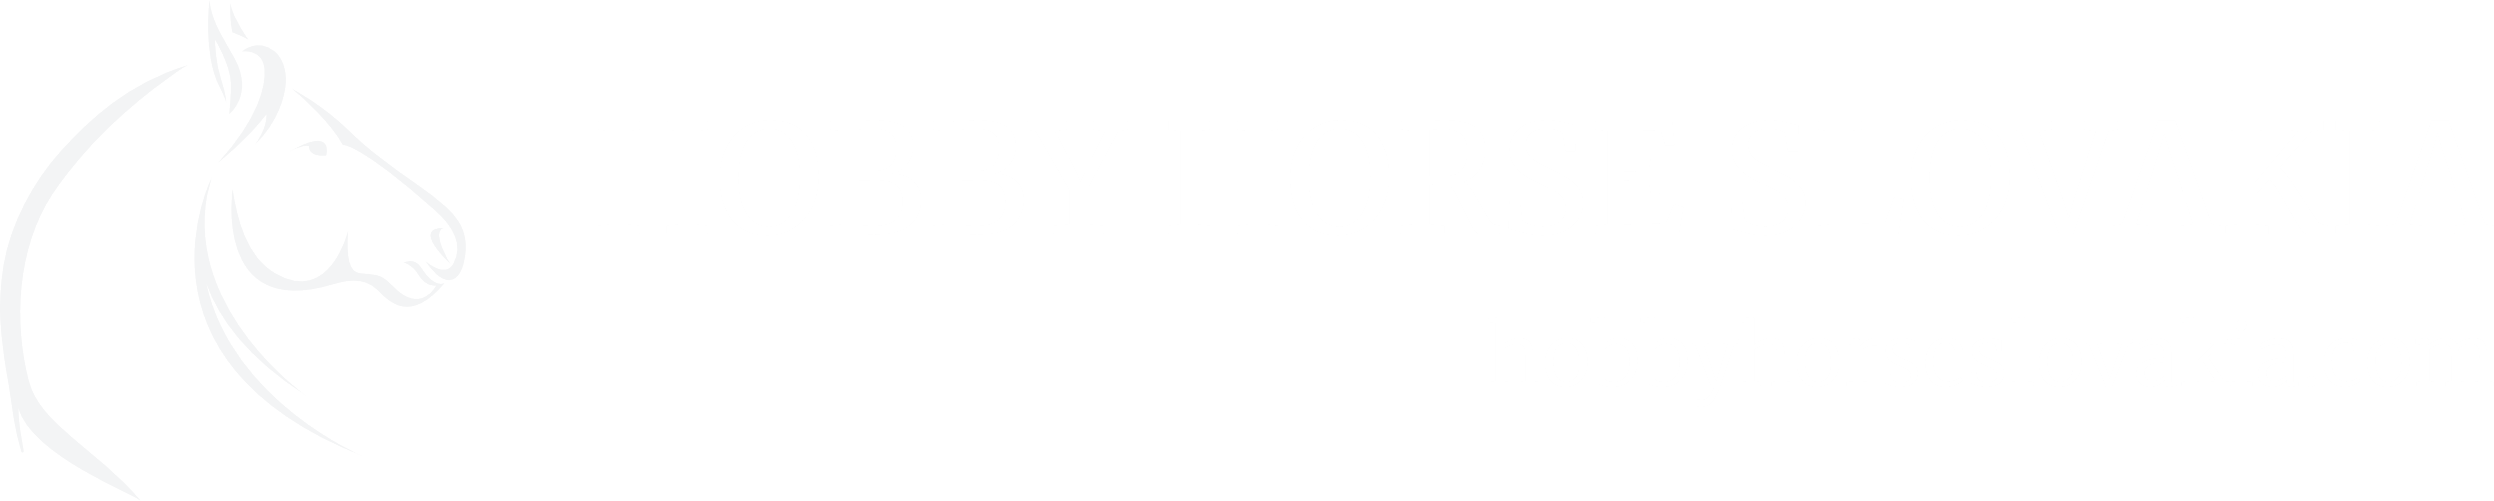 Logo Hobby horse Slovakia white